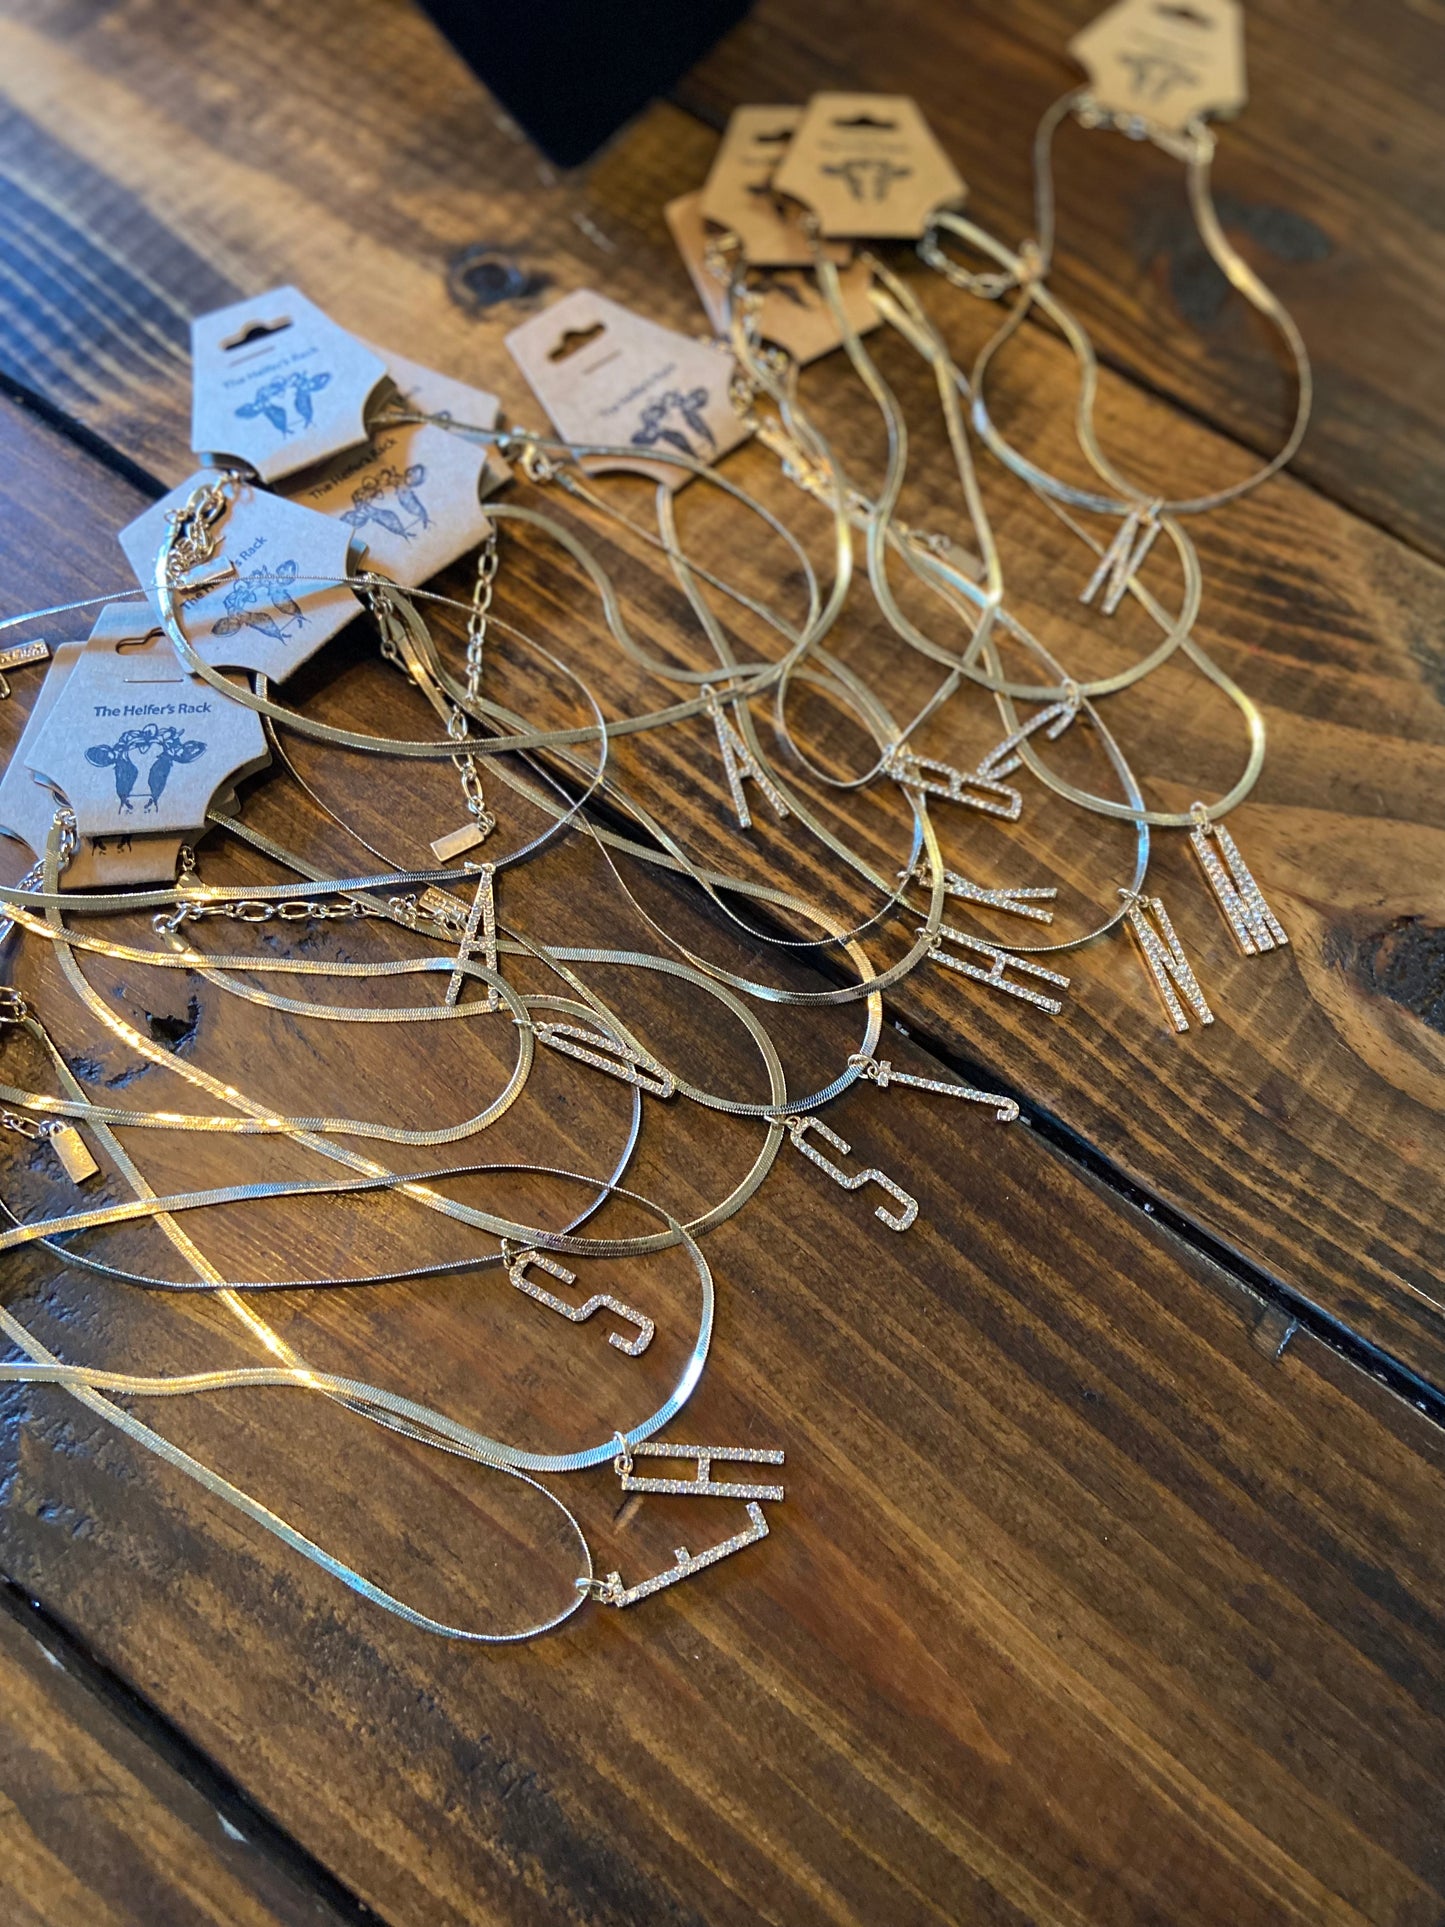 Letter Necklaces